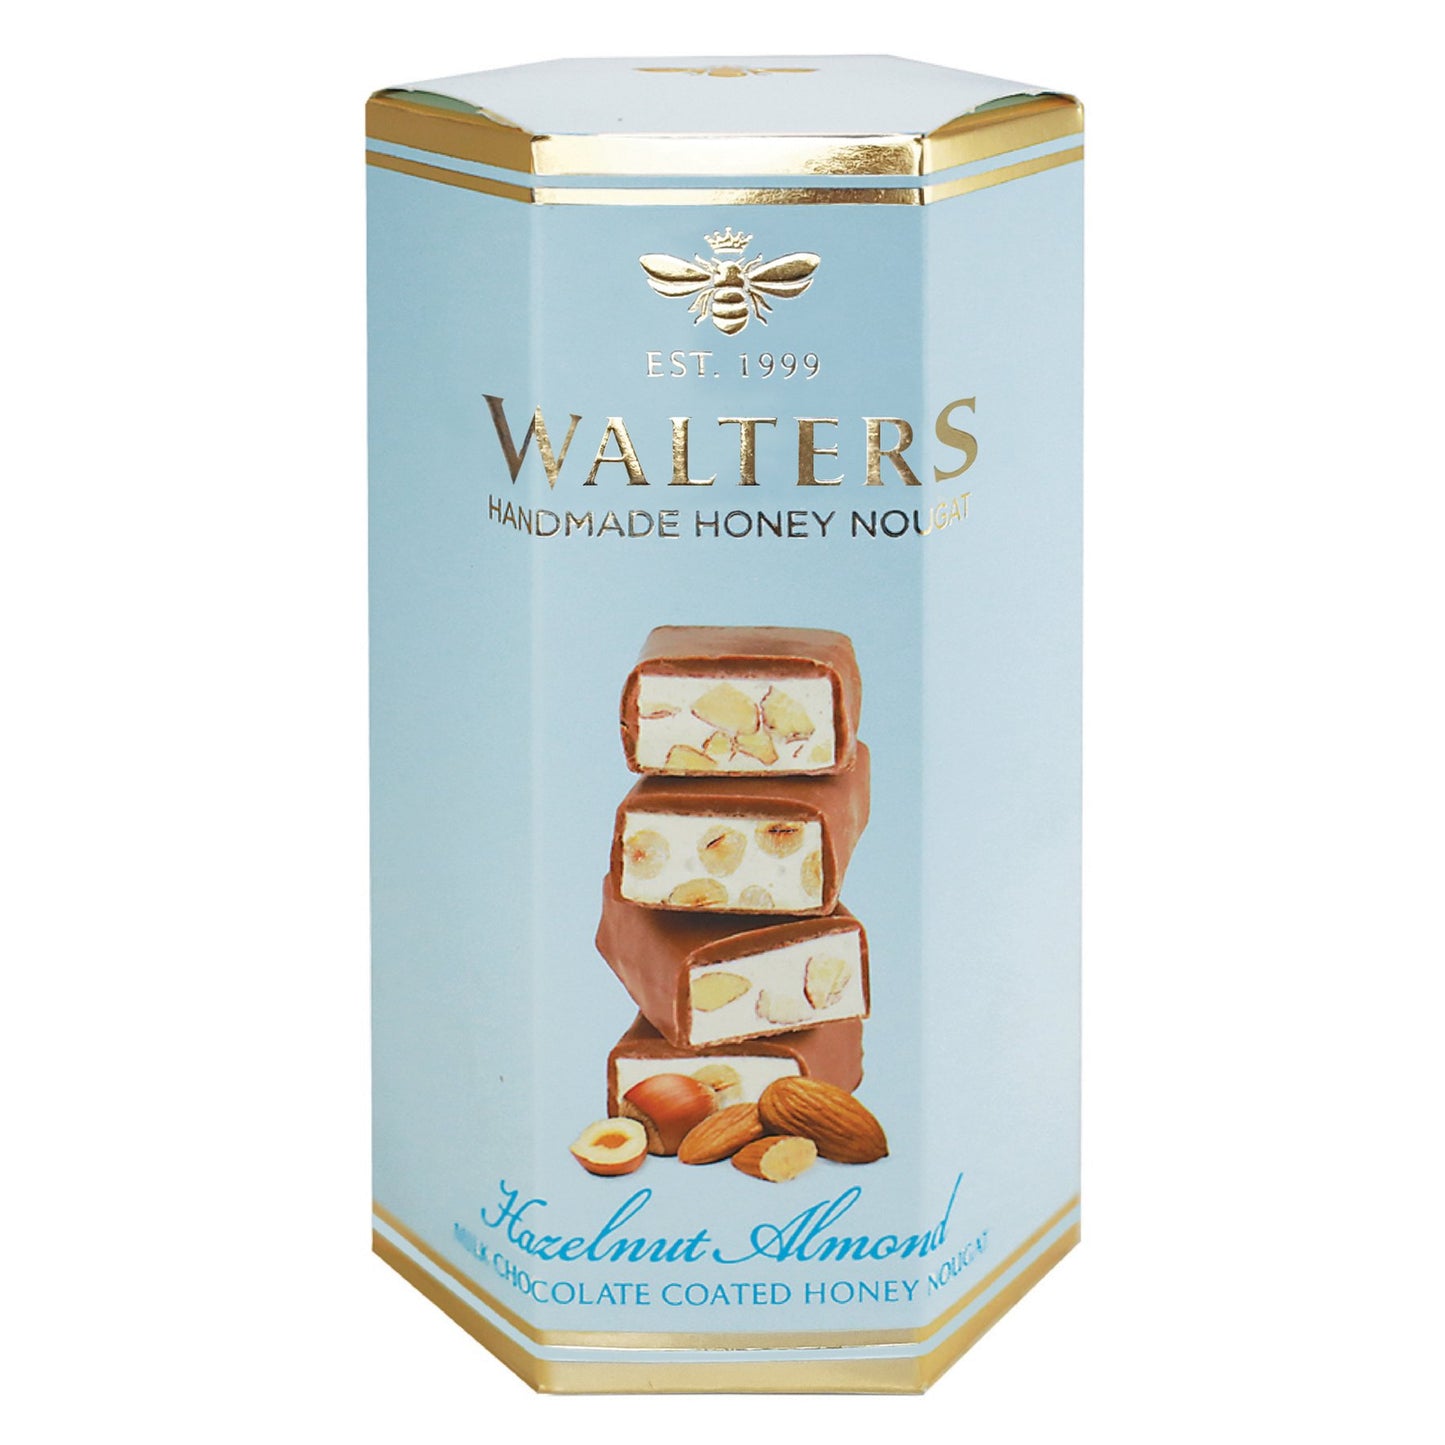 WALTERS HAZELNUT & ALMOND CHOCOLATE NOUGAT GIFT BOX 140g -